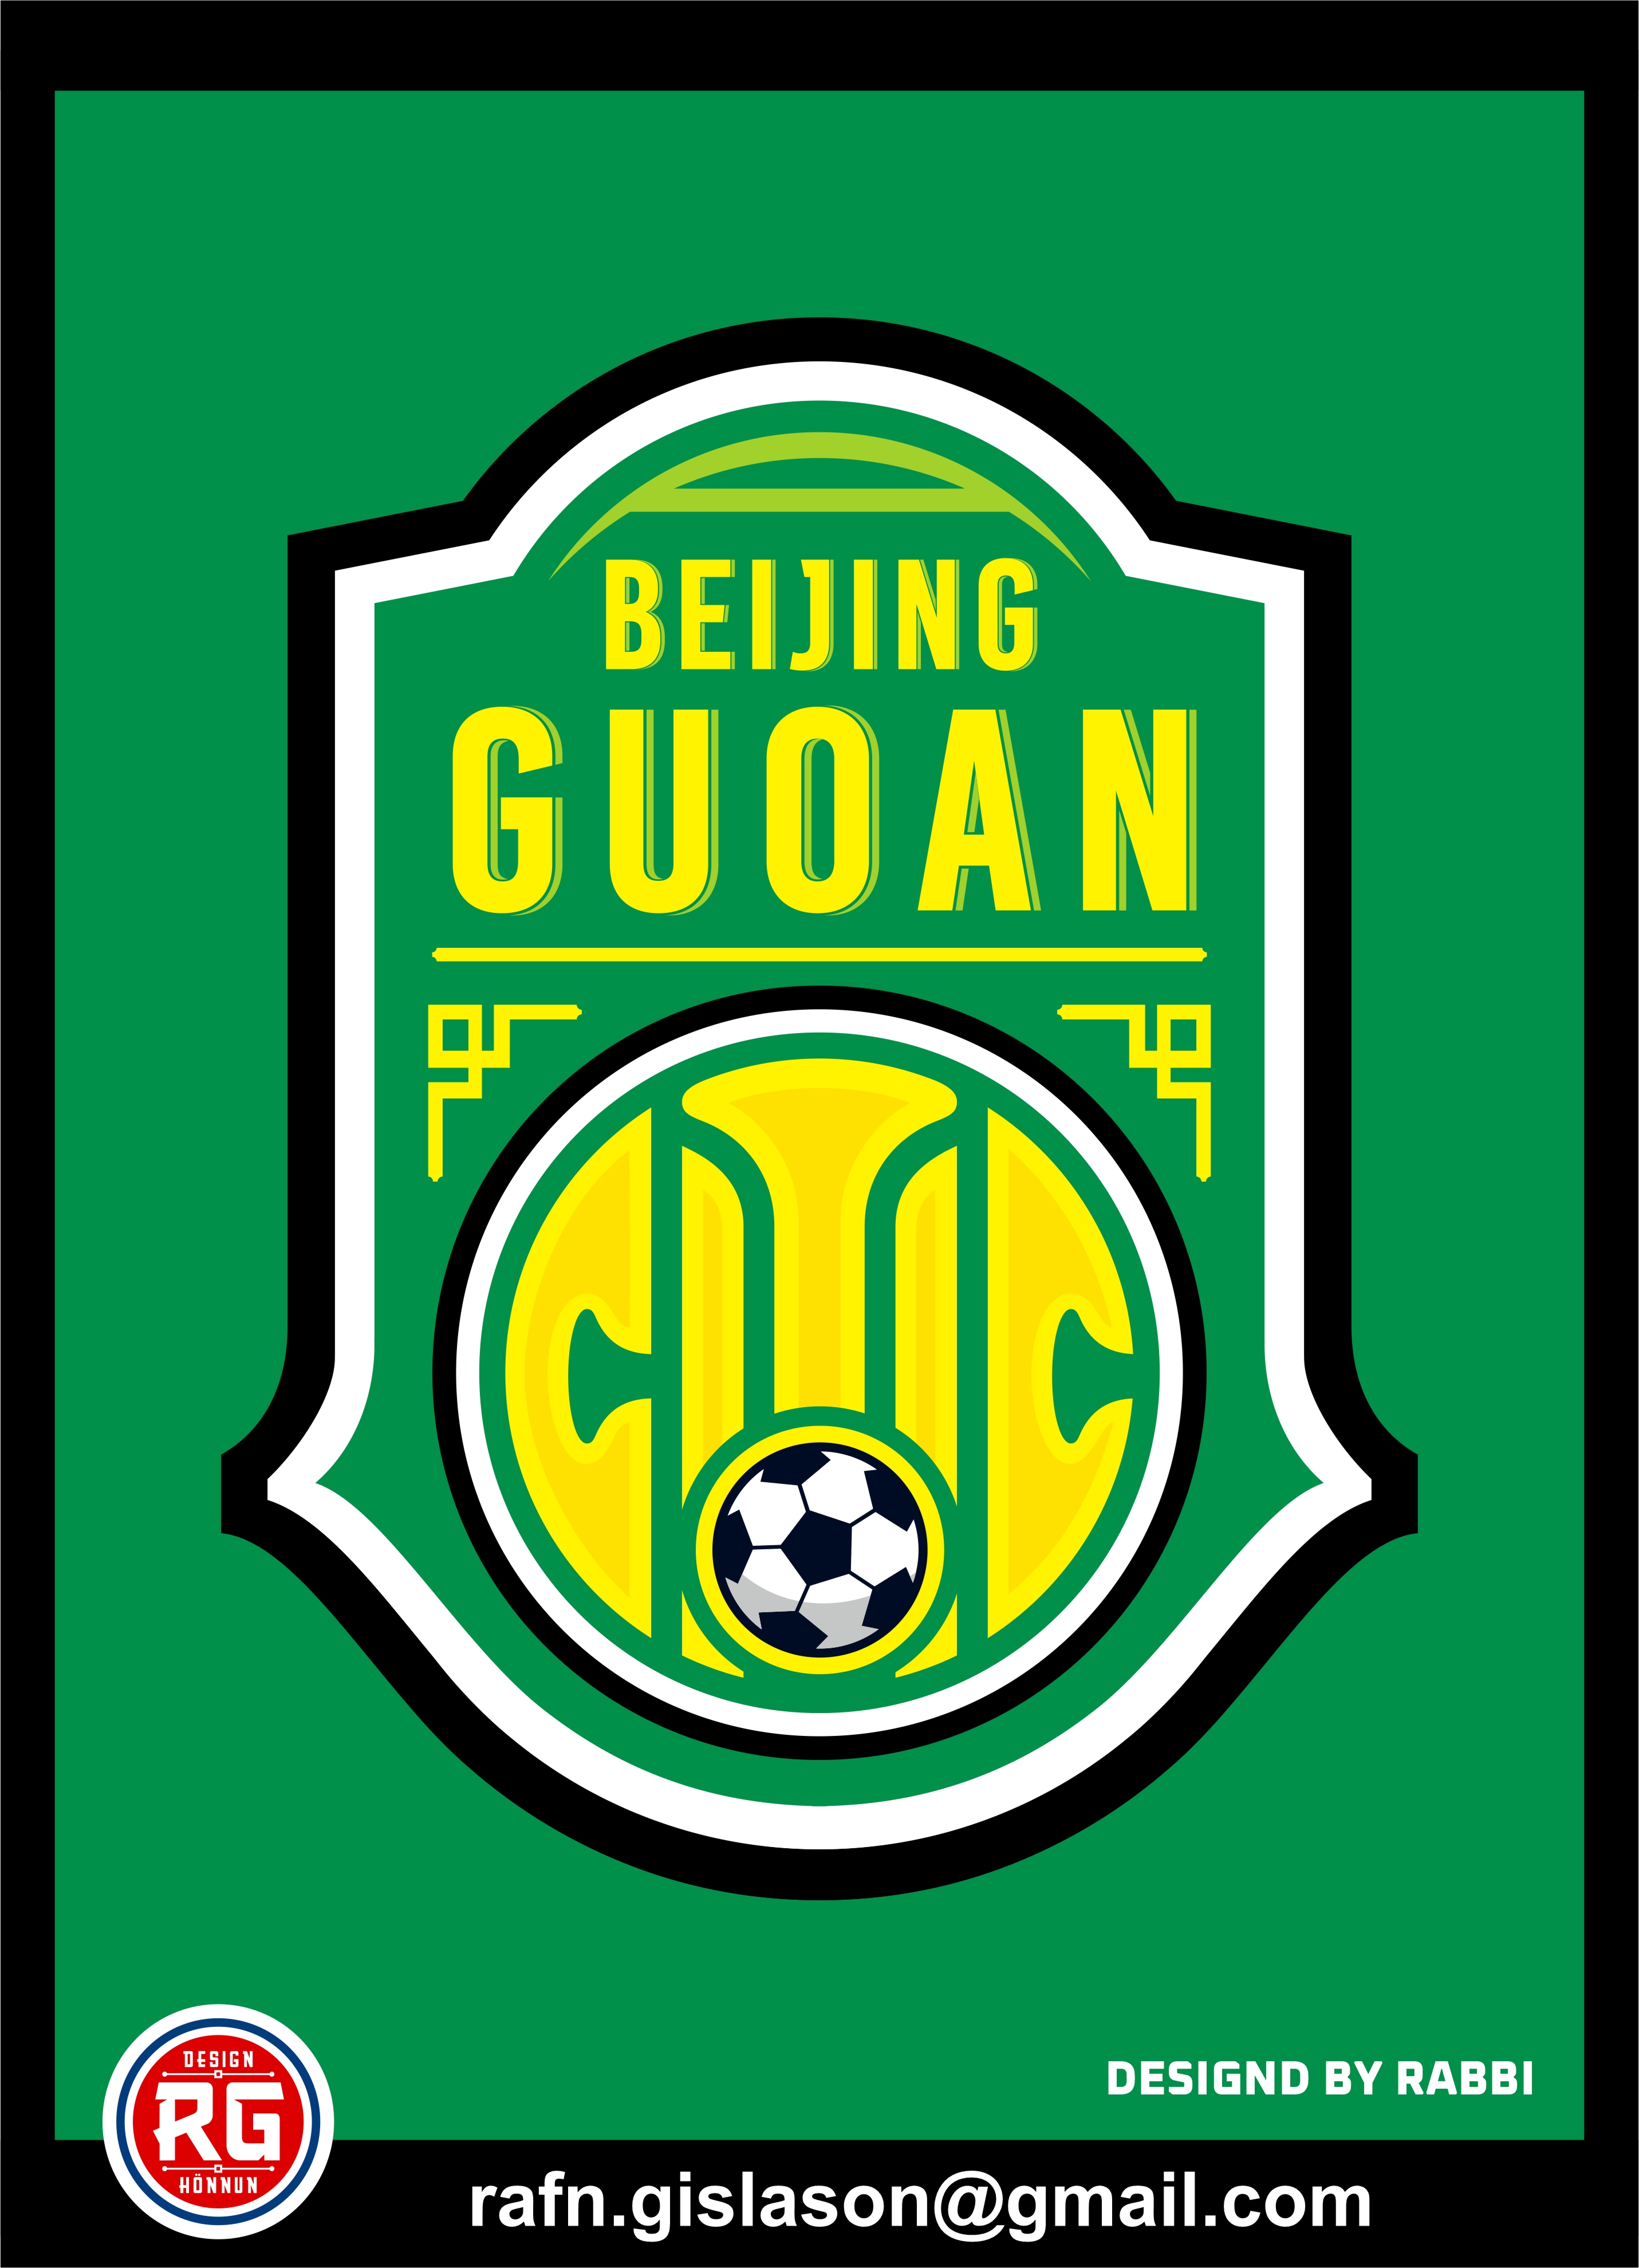 BEIJING GUOAN FC